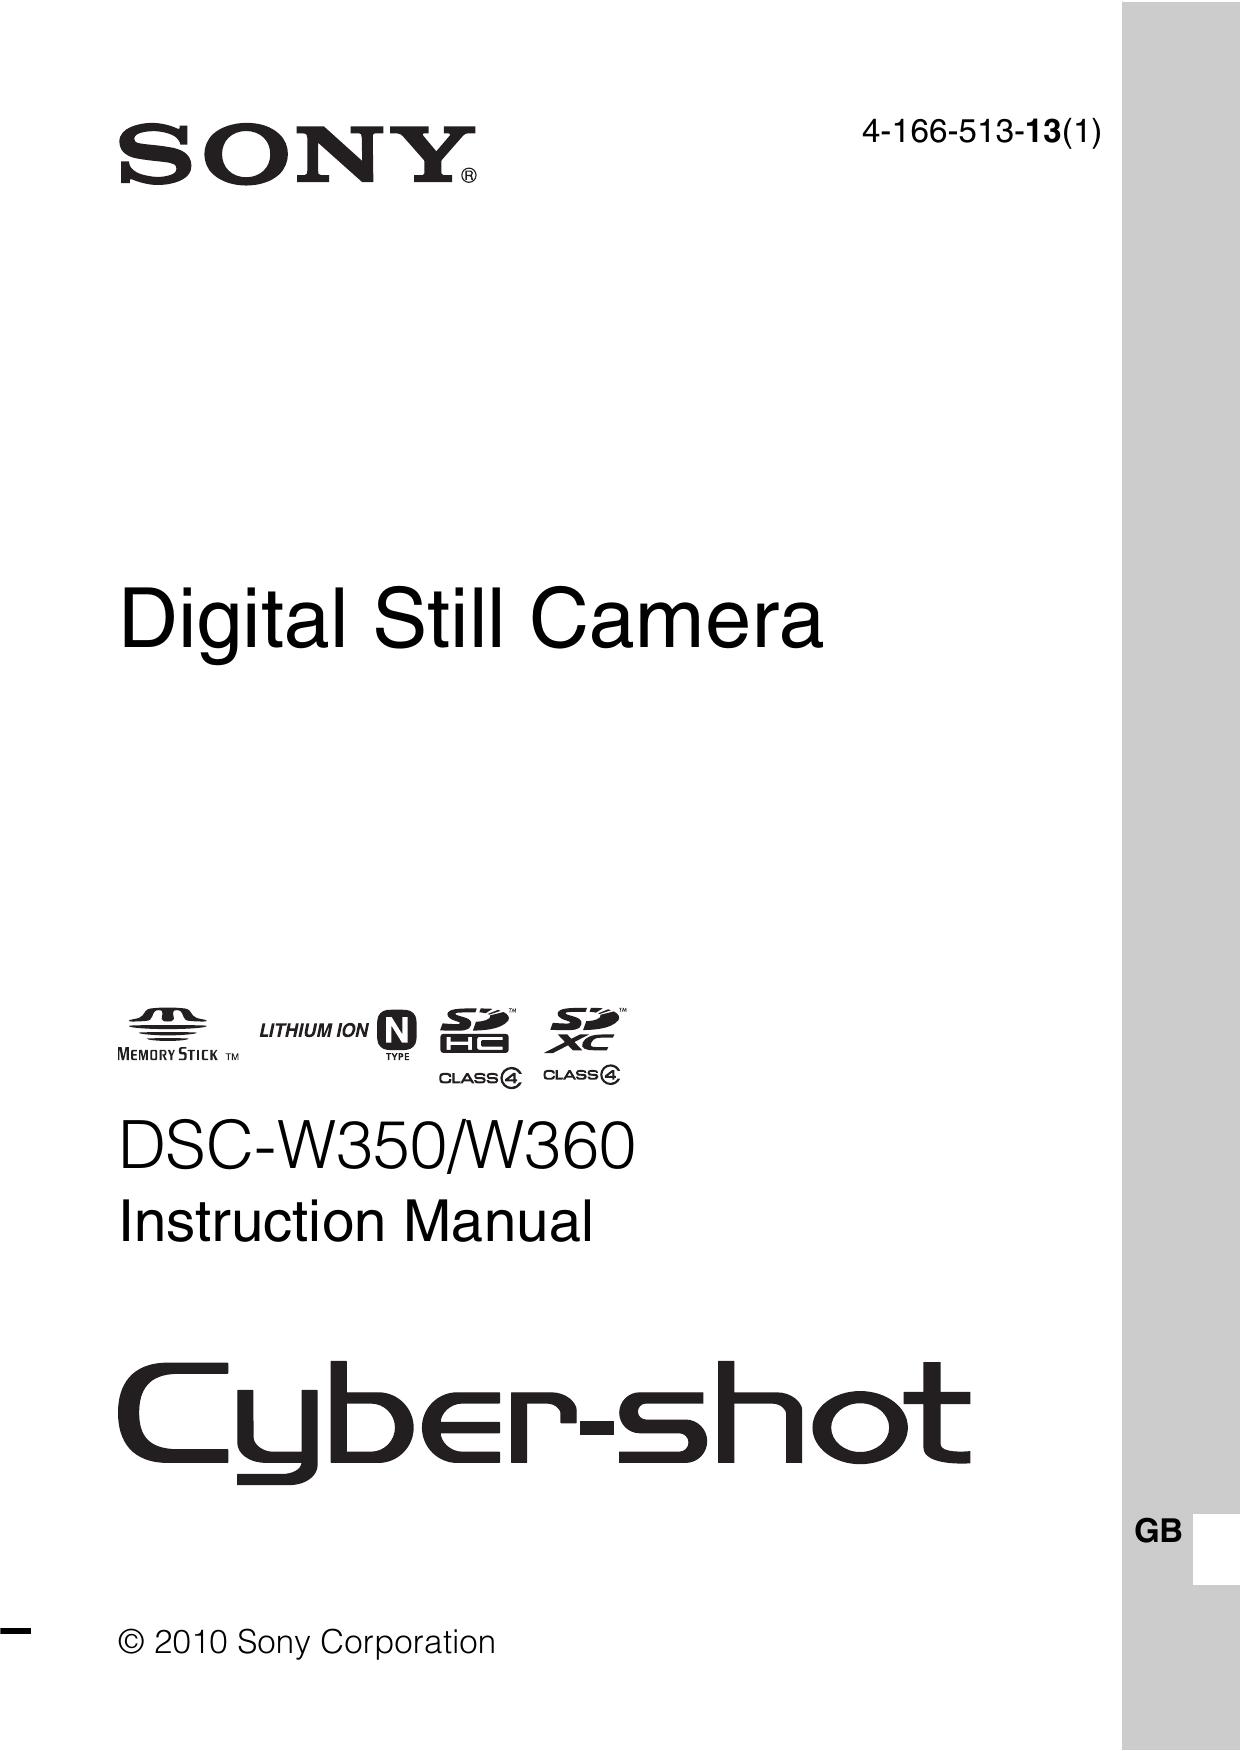 Sony 4-166-513-13(1) Digital Camera User Manual